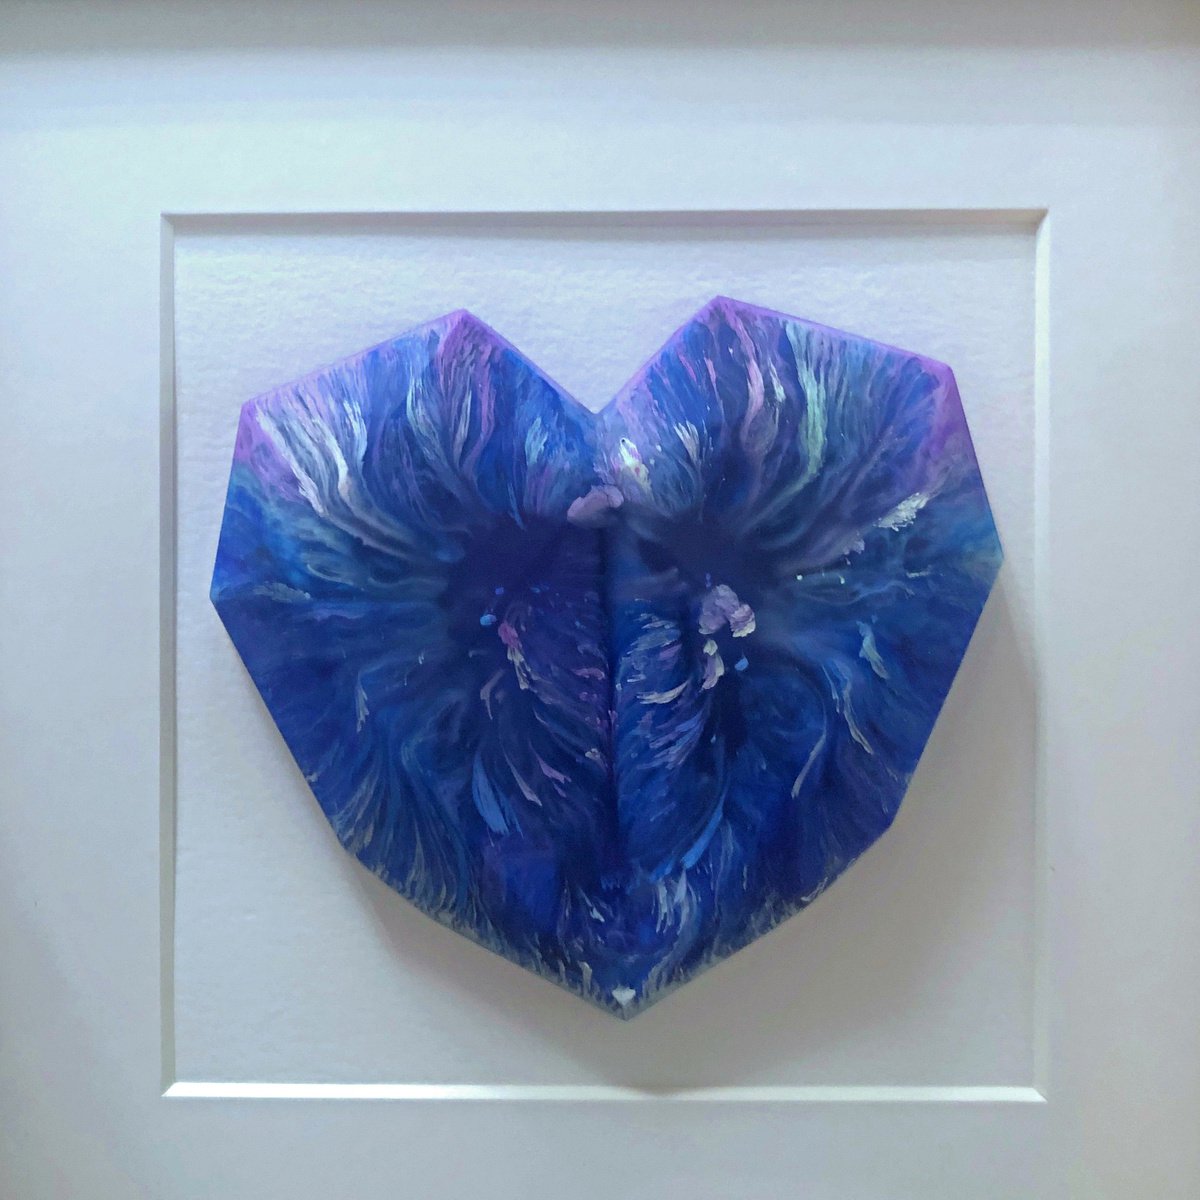 Big Blue Heart #3 by Ana Hefco